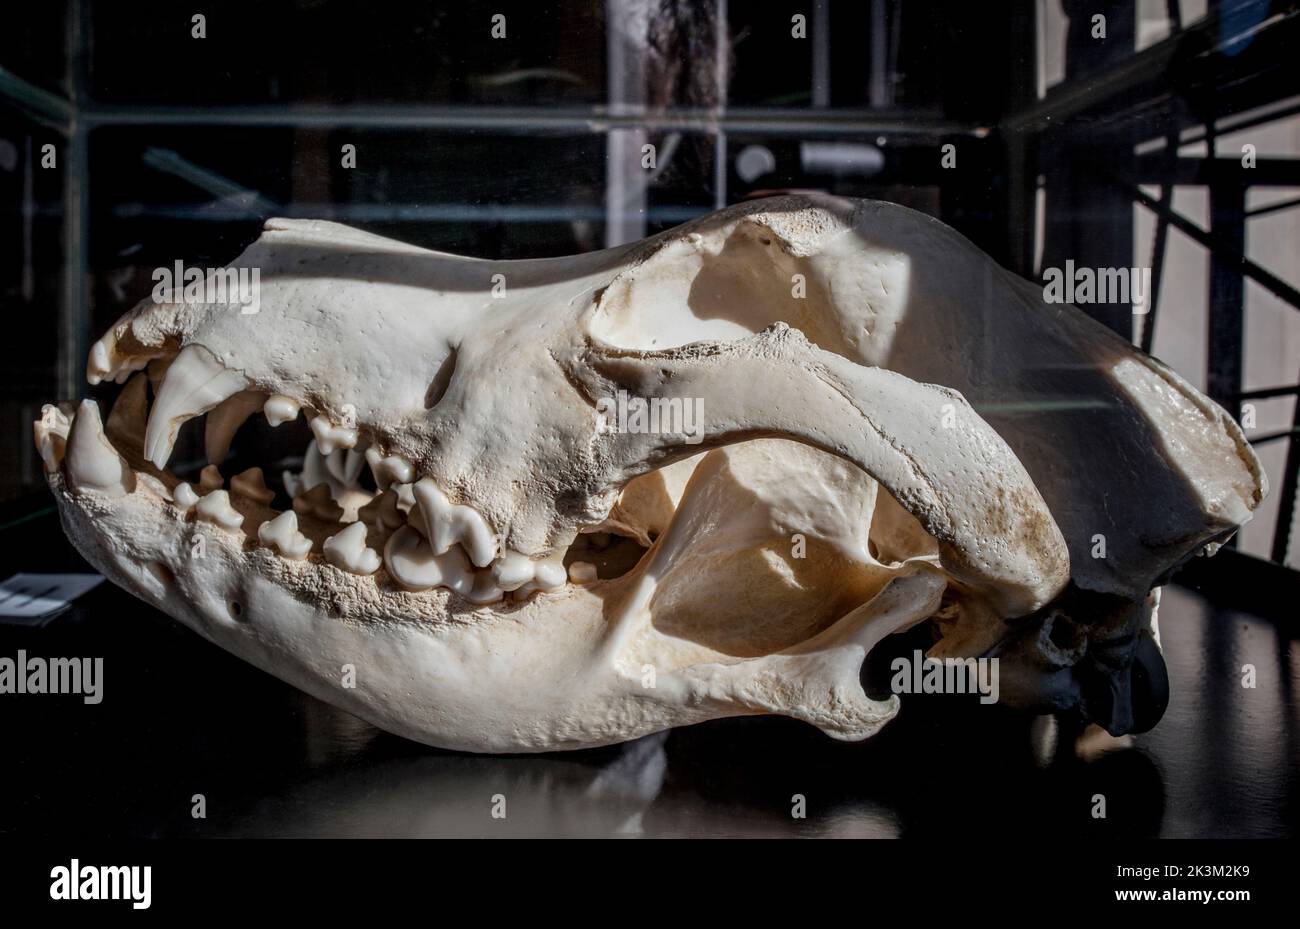 La Garganta, España - Nov 21th, 2020: Gran perro de Dane cranium, raza grande de perro originaria de Alemania Foto de stock